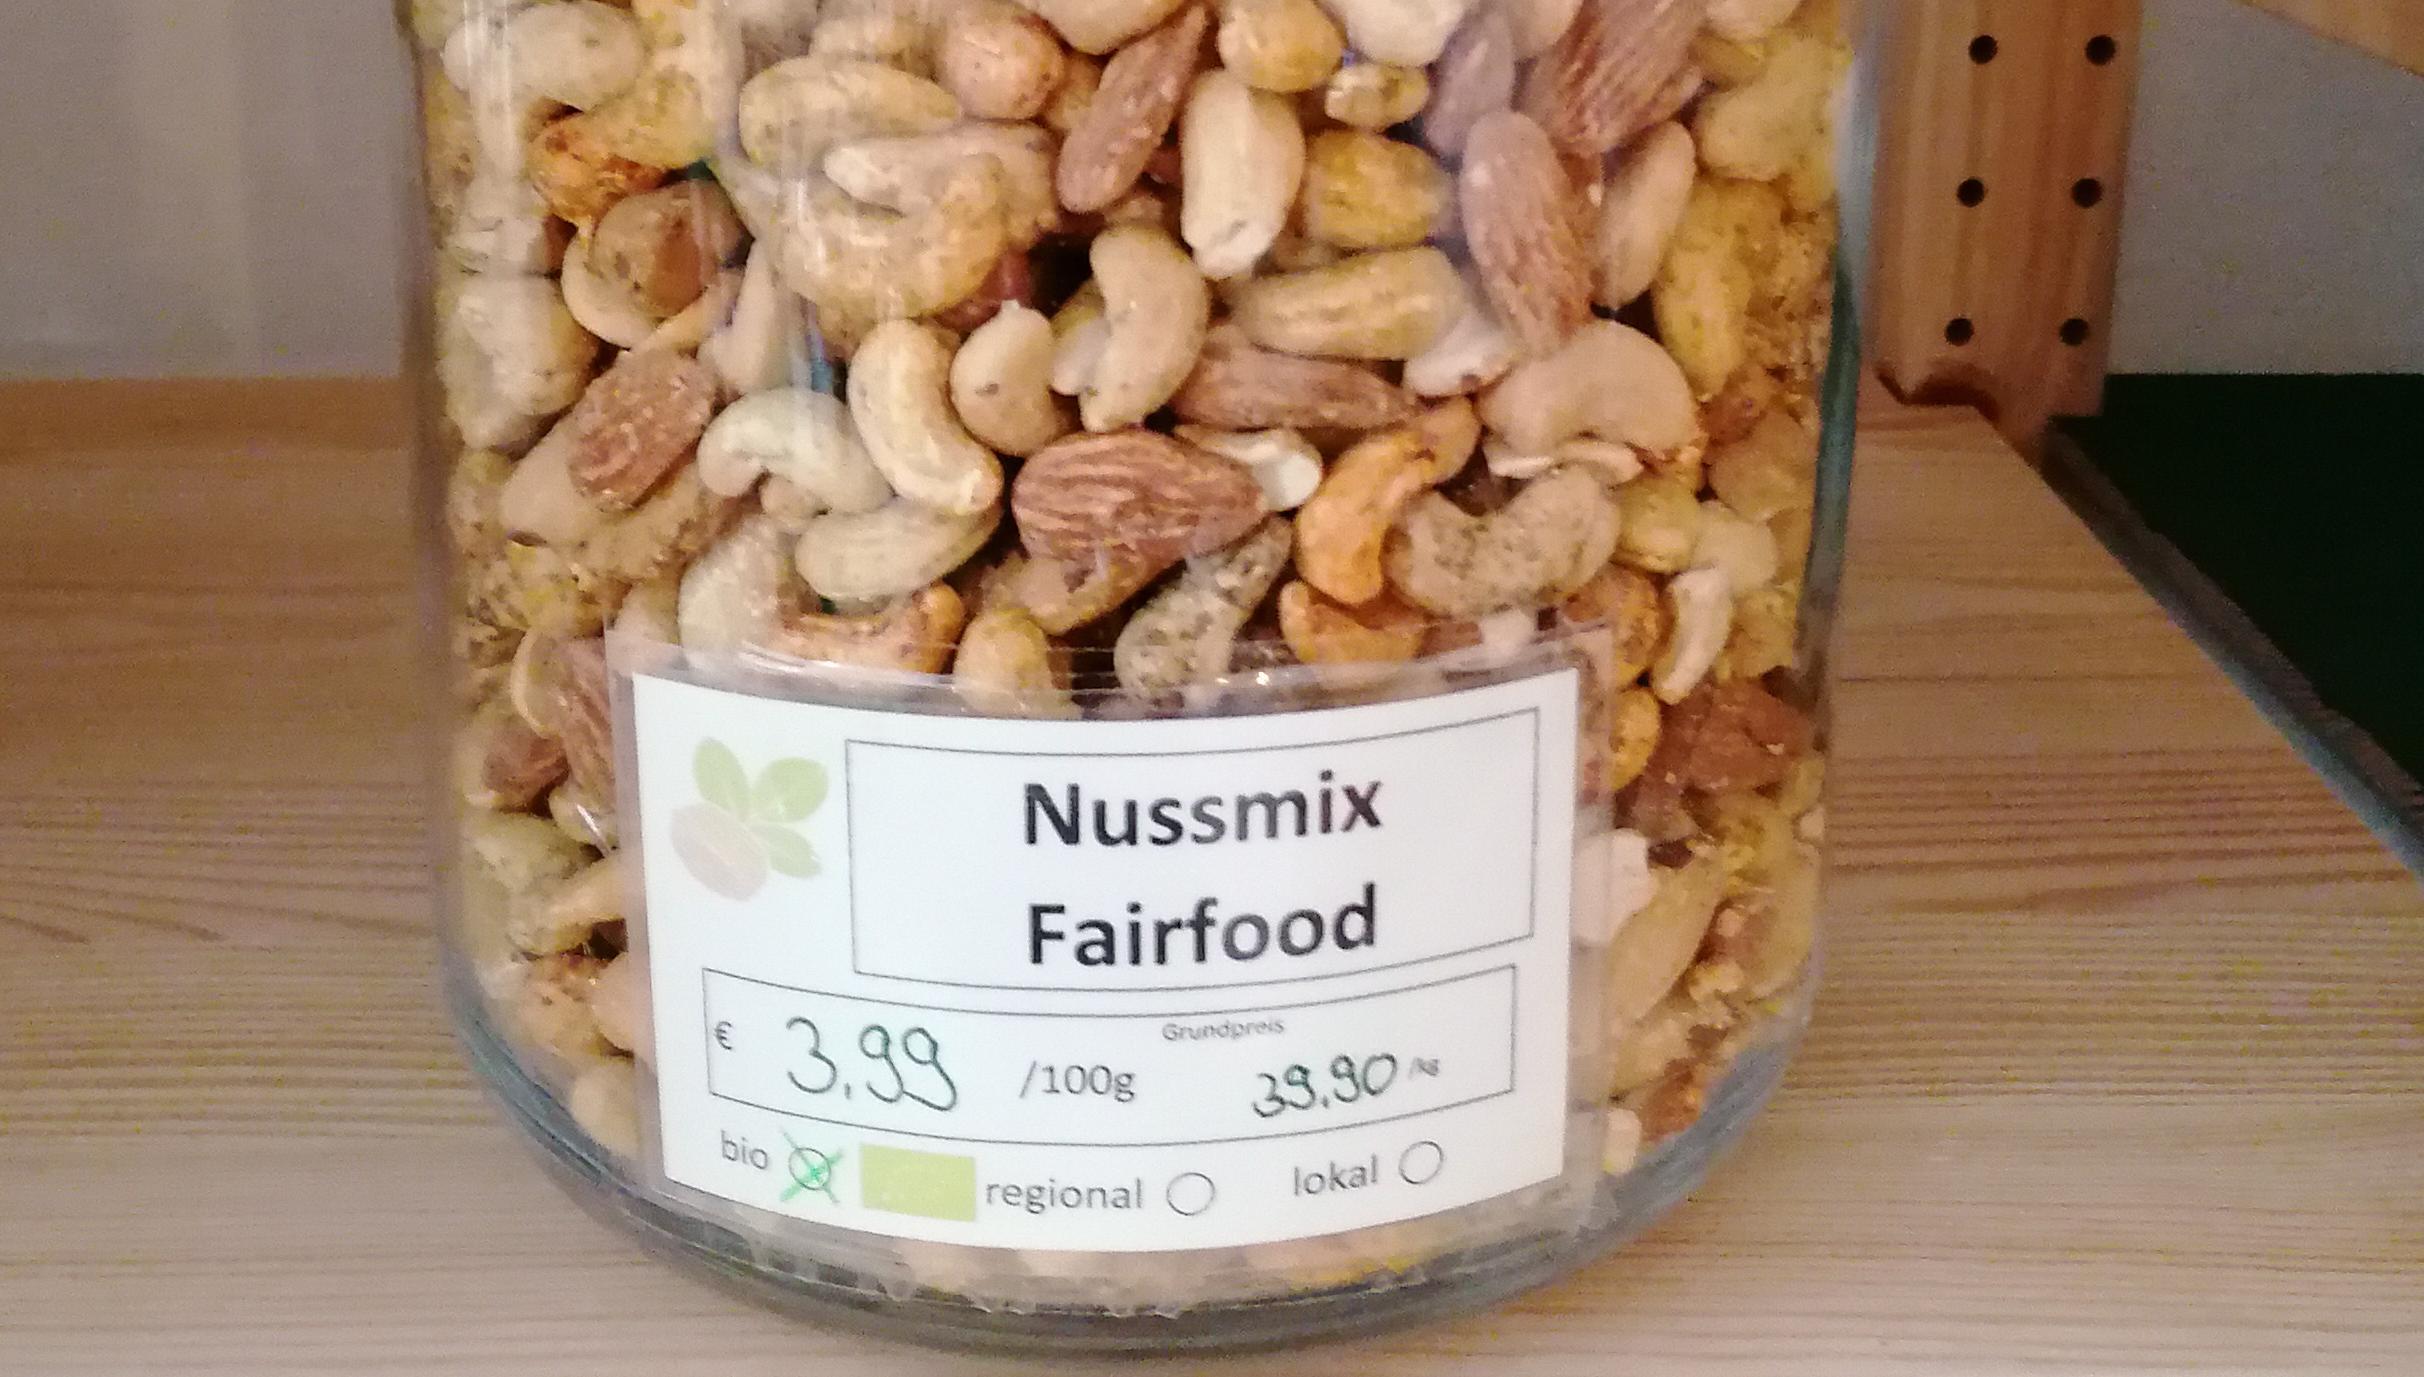 Nussmix Fairfood